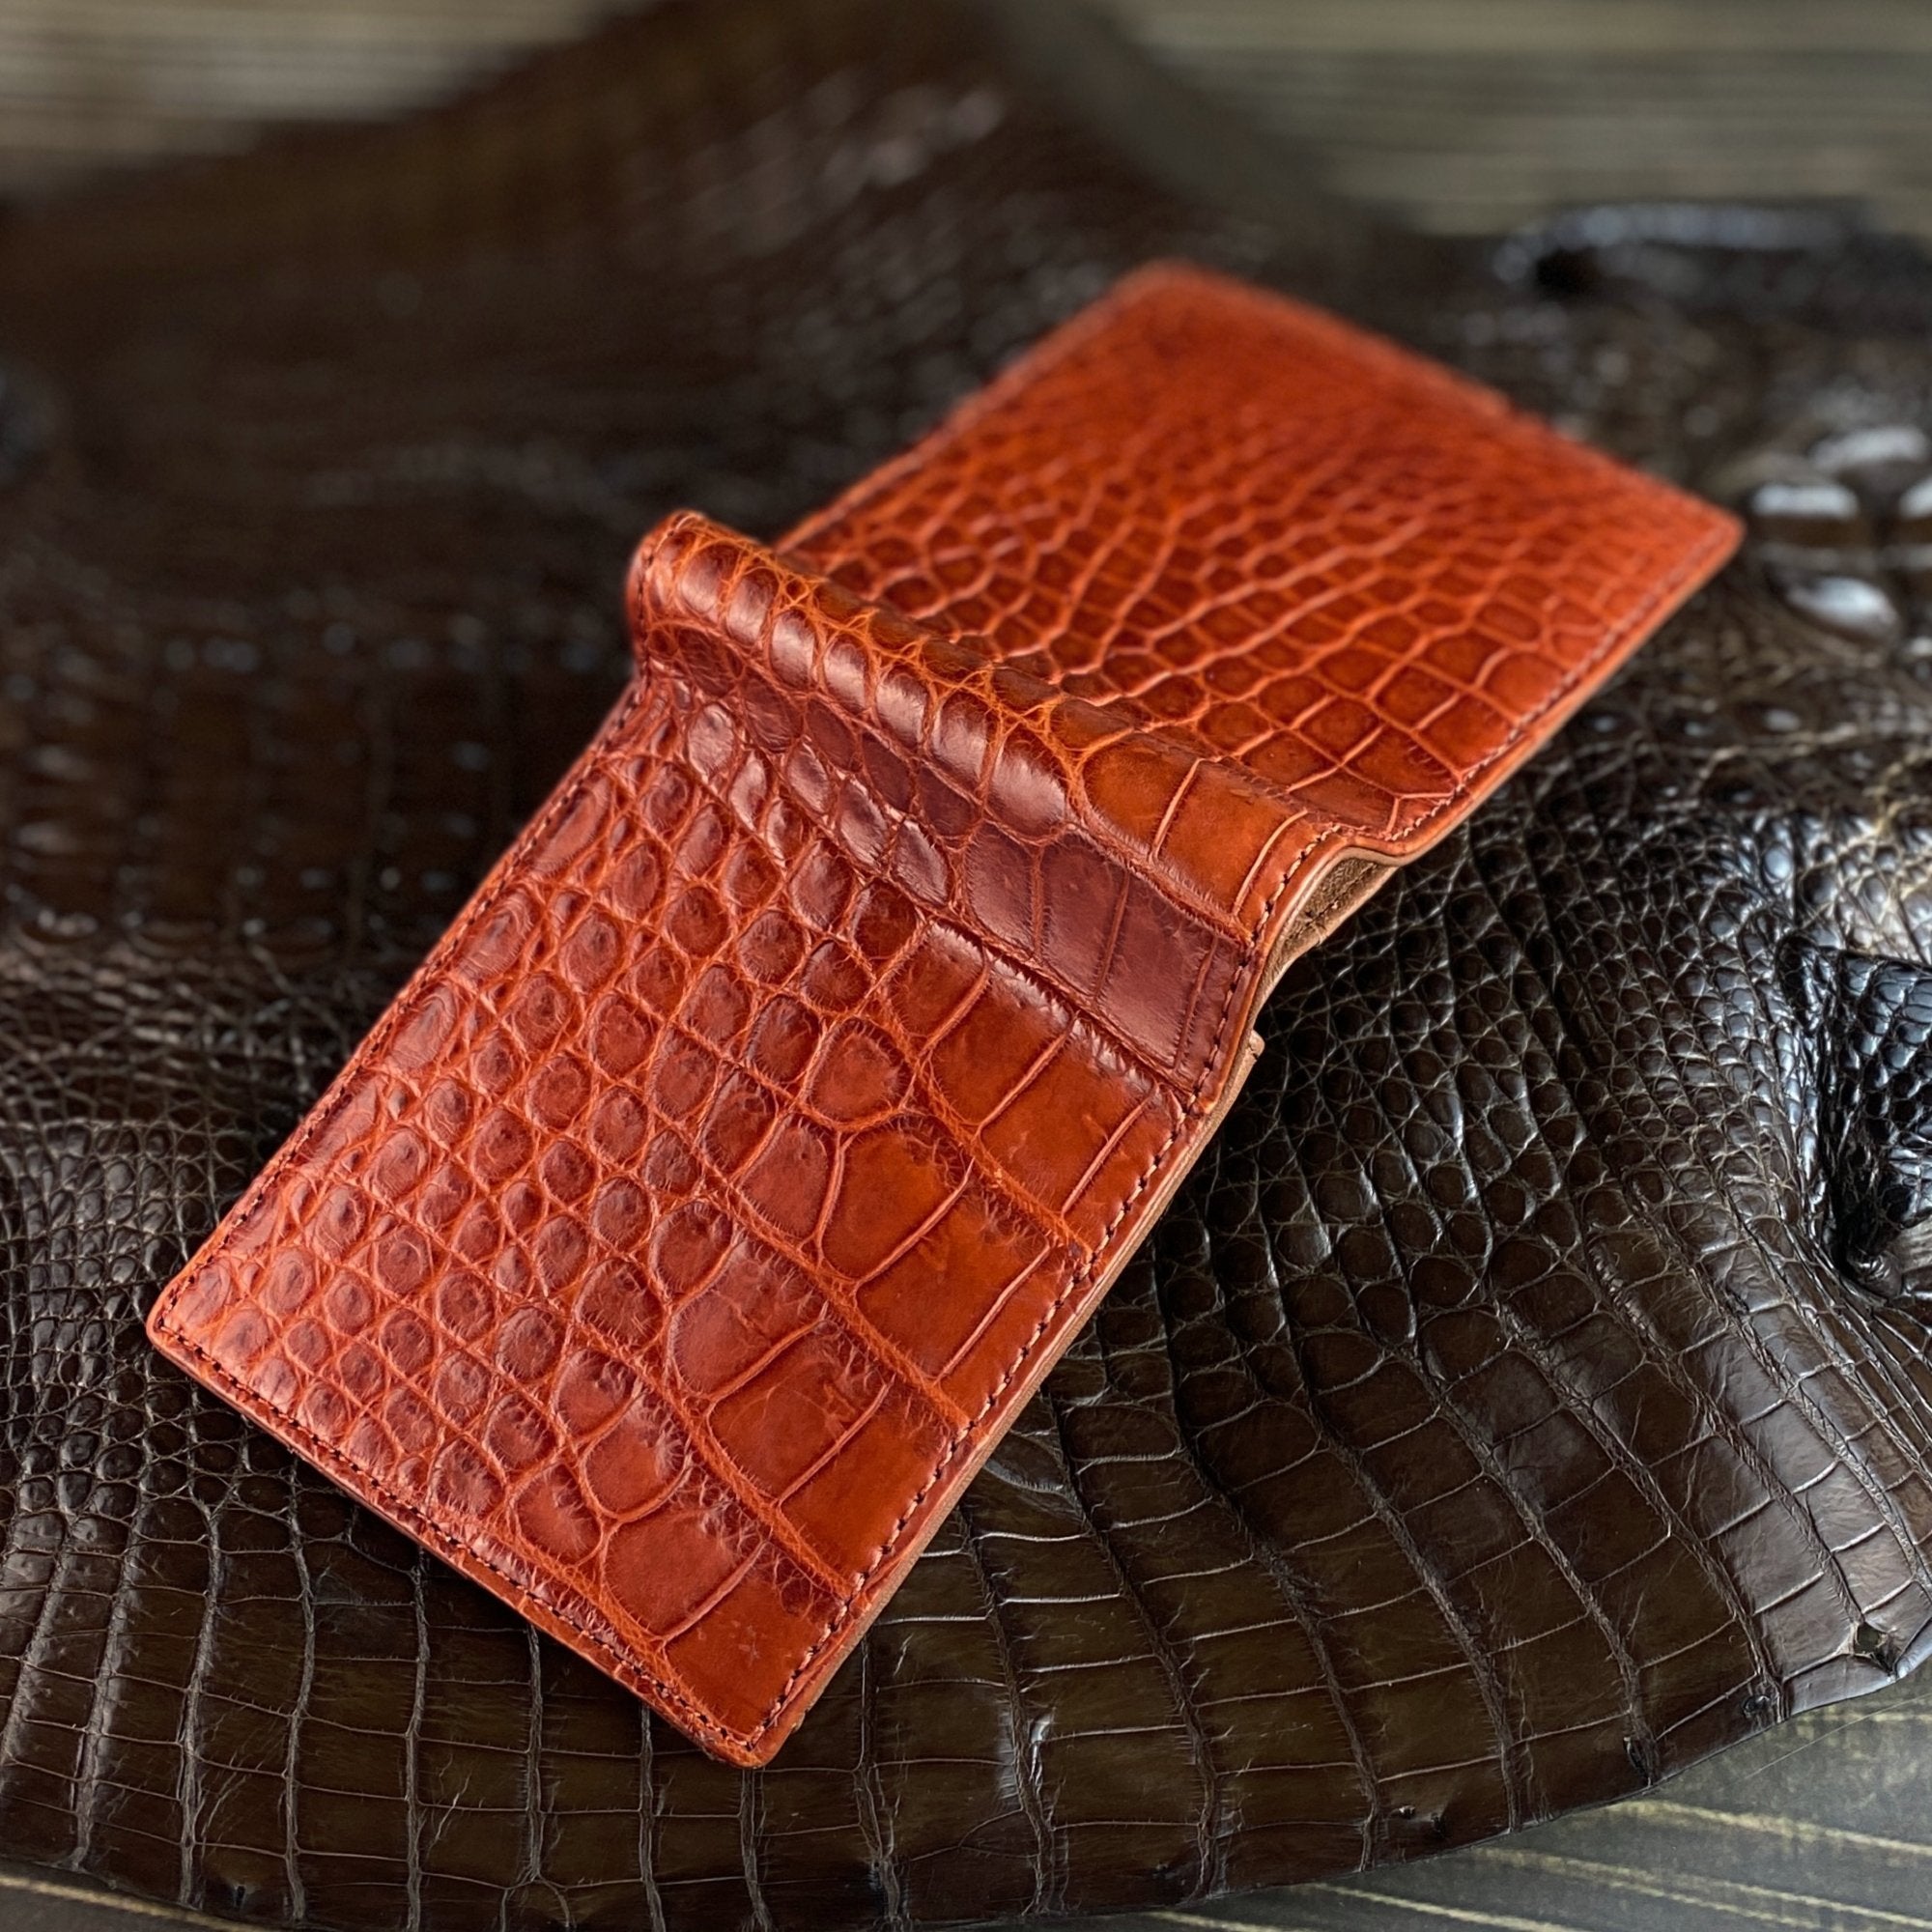 Light Brown Alligator Belly Leather Bifold Wallet for Men RFID Blocking | VINAM-30 - Vinacreations